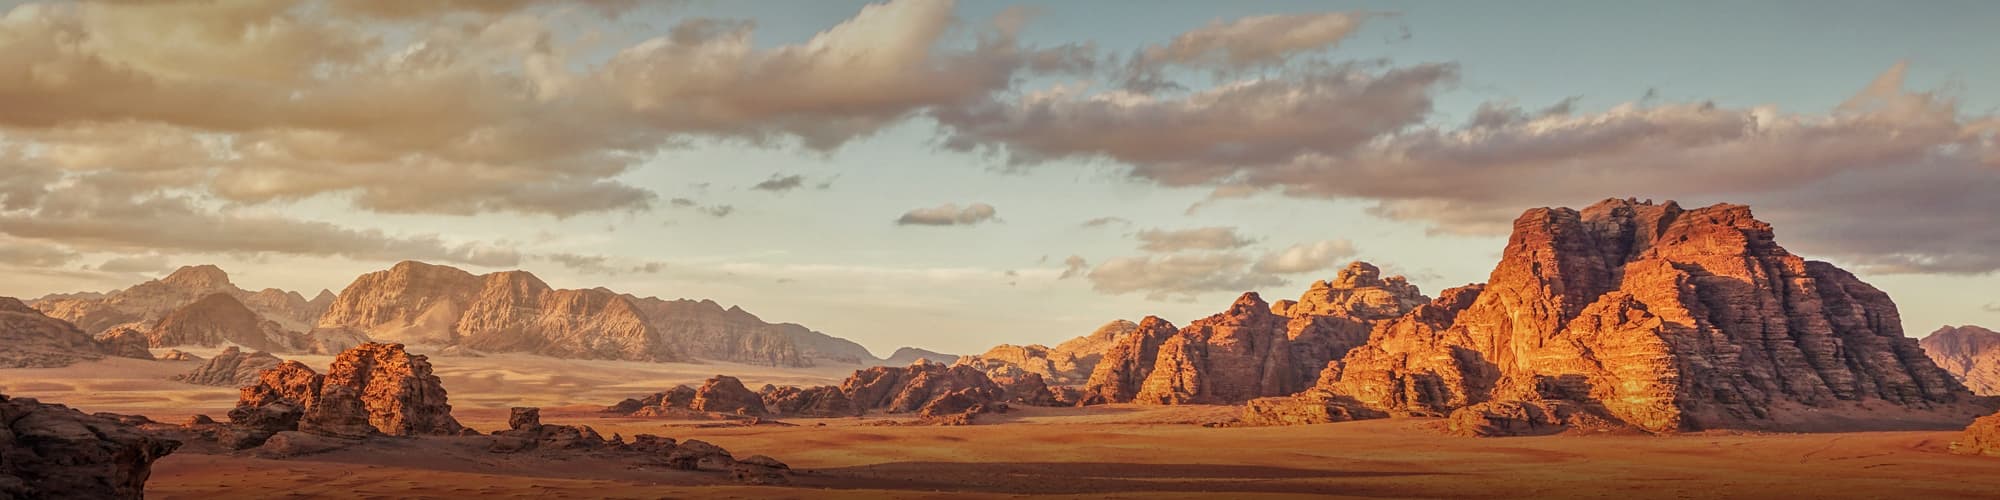 Voyage en groupe Wadi Rum © Lubo Ivanko